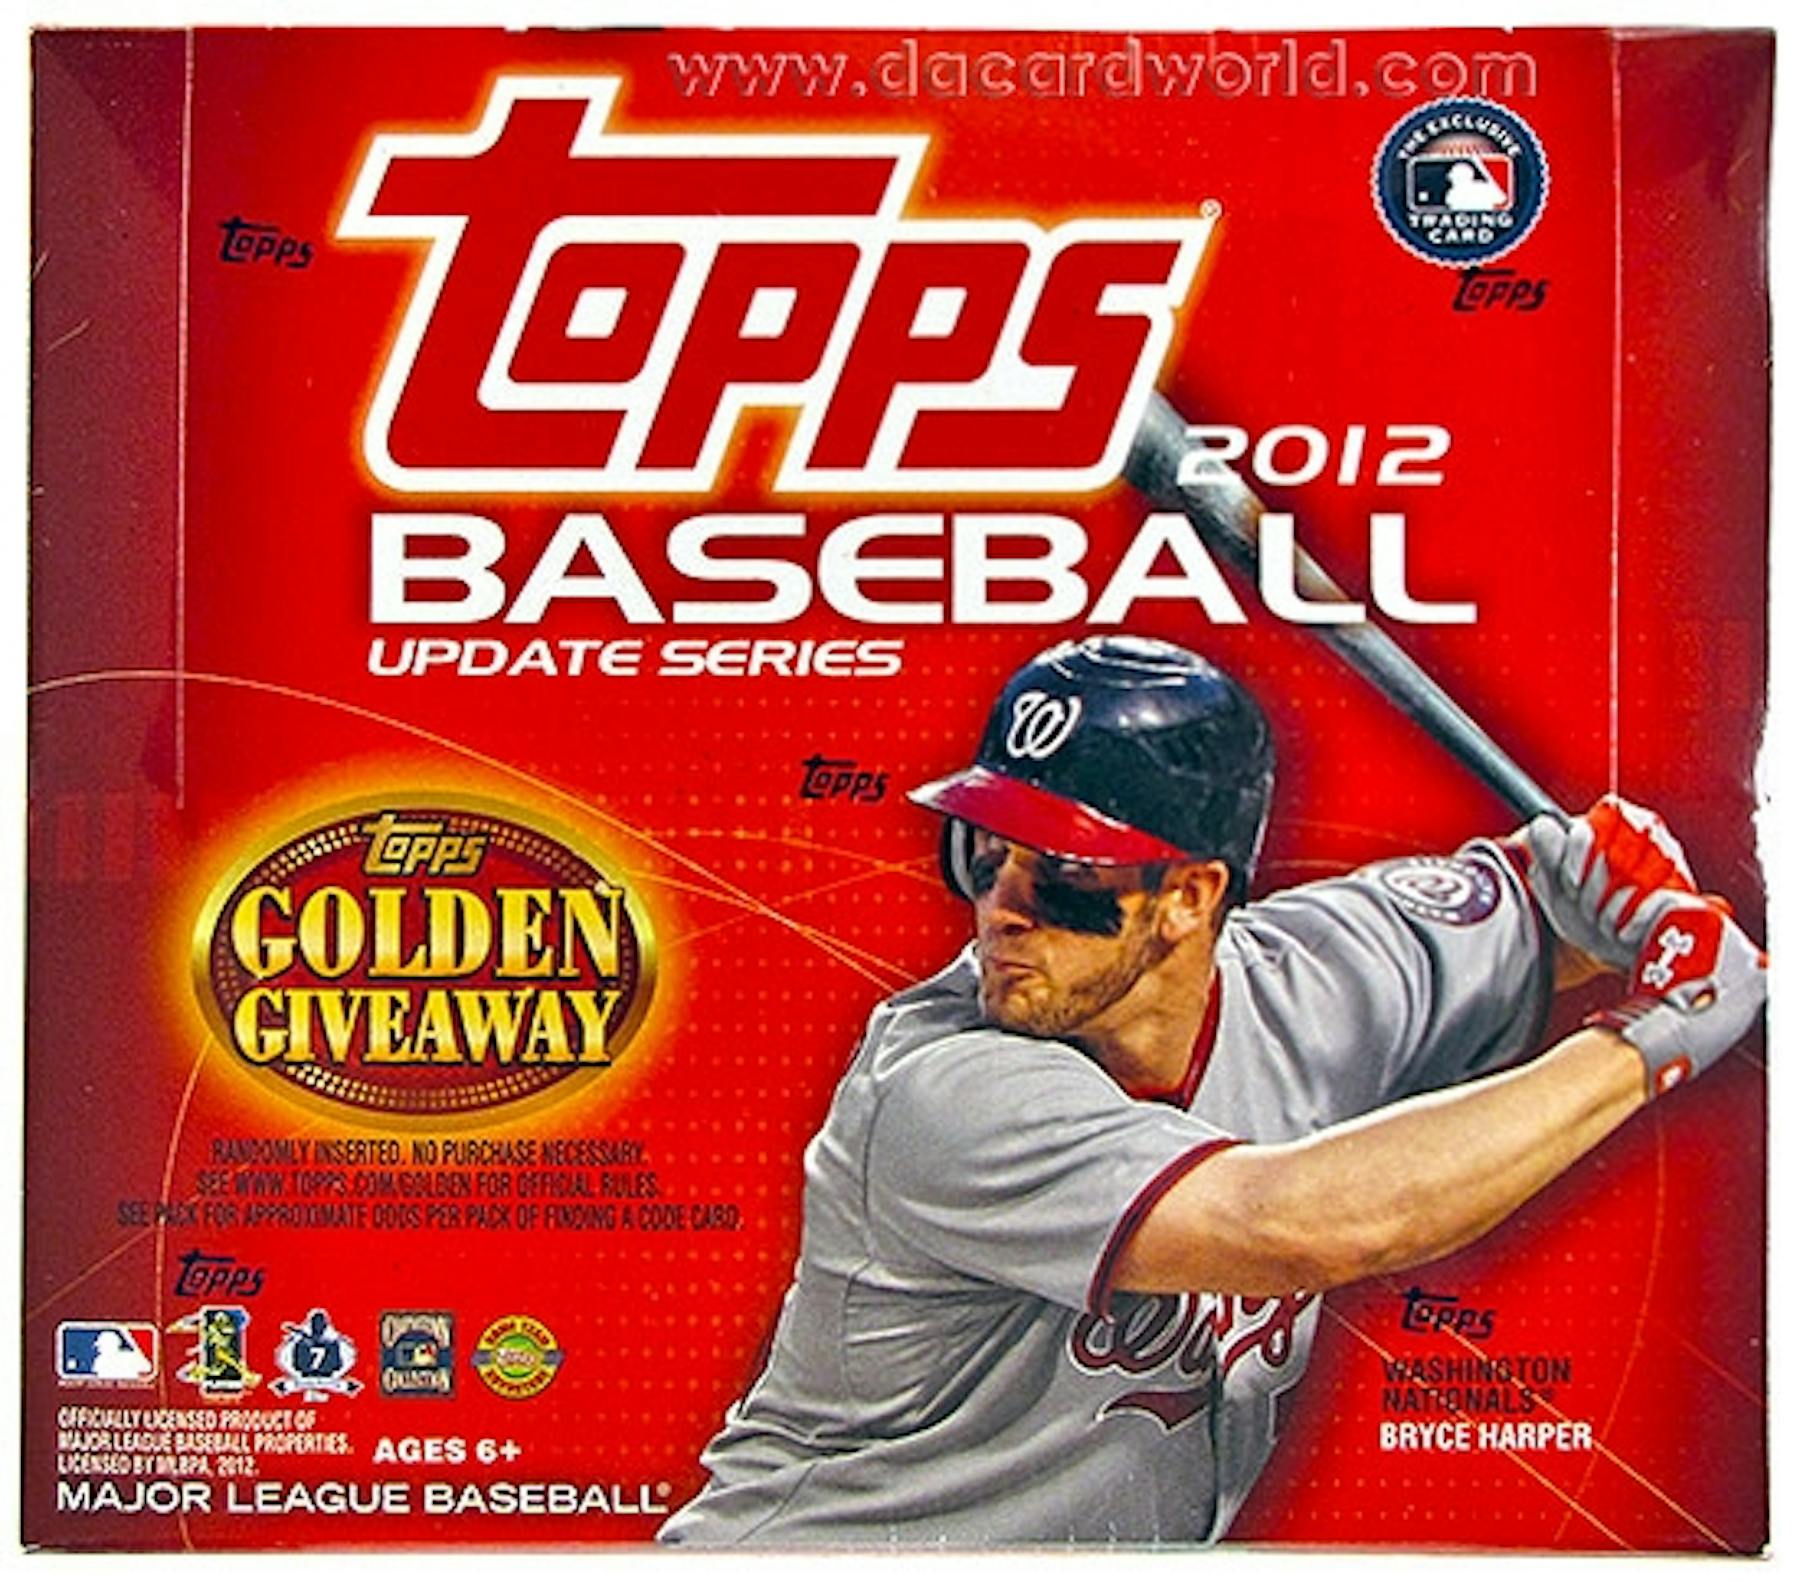 2012 Topps Update Series Baseball Jumbo Box